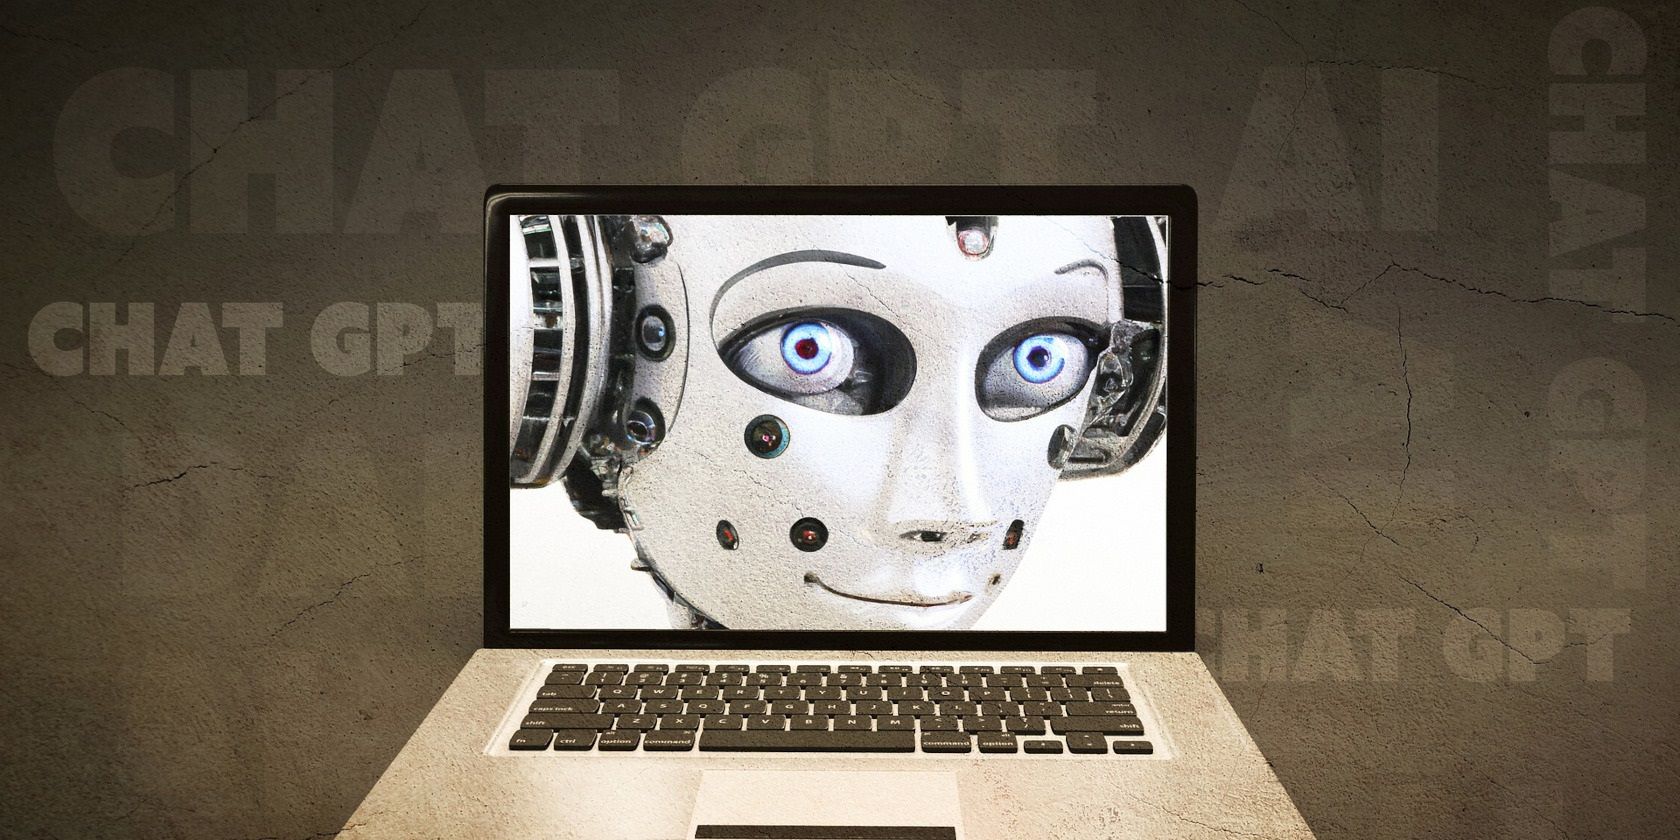 A robotic head on a computer screen